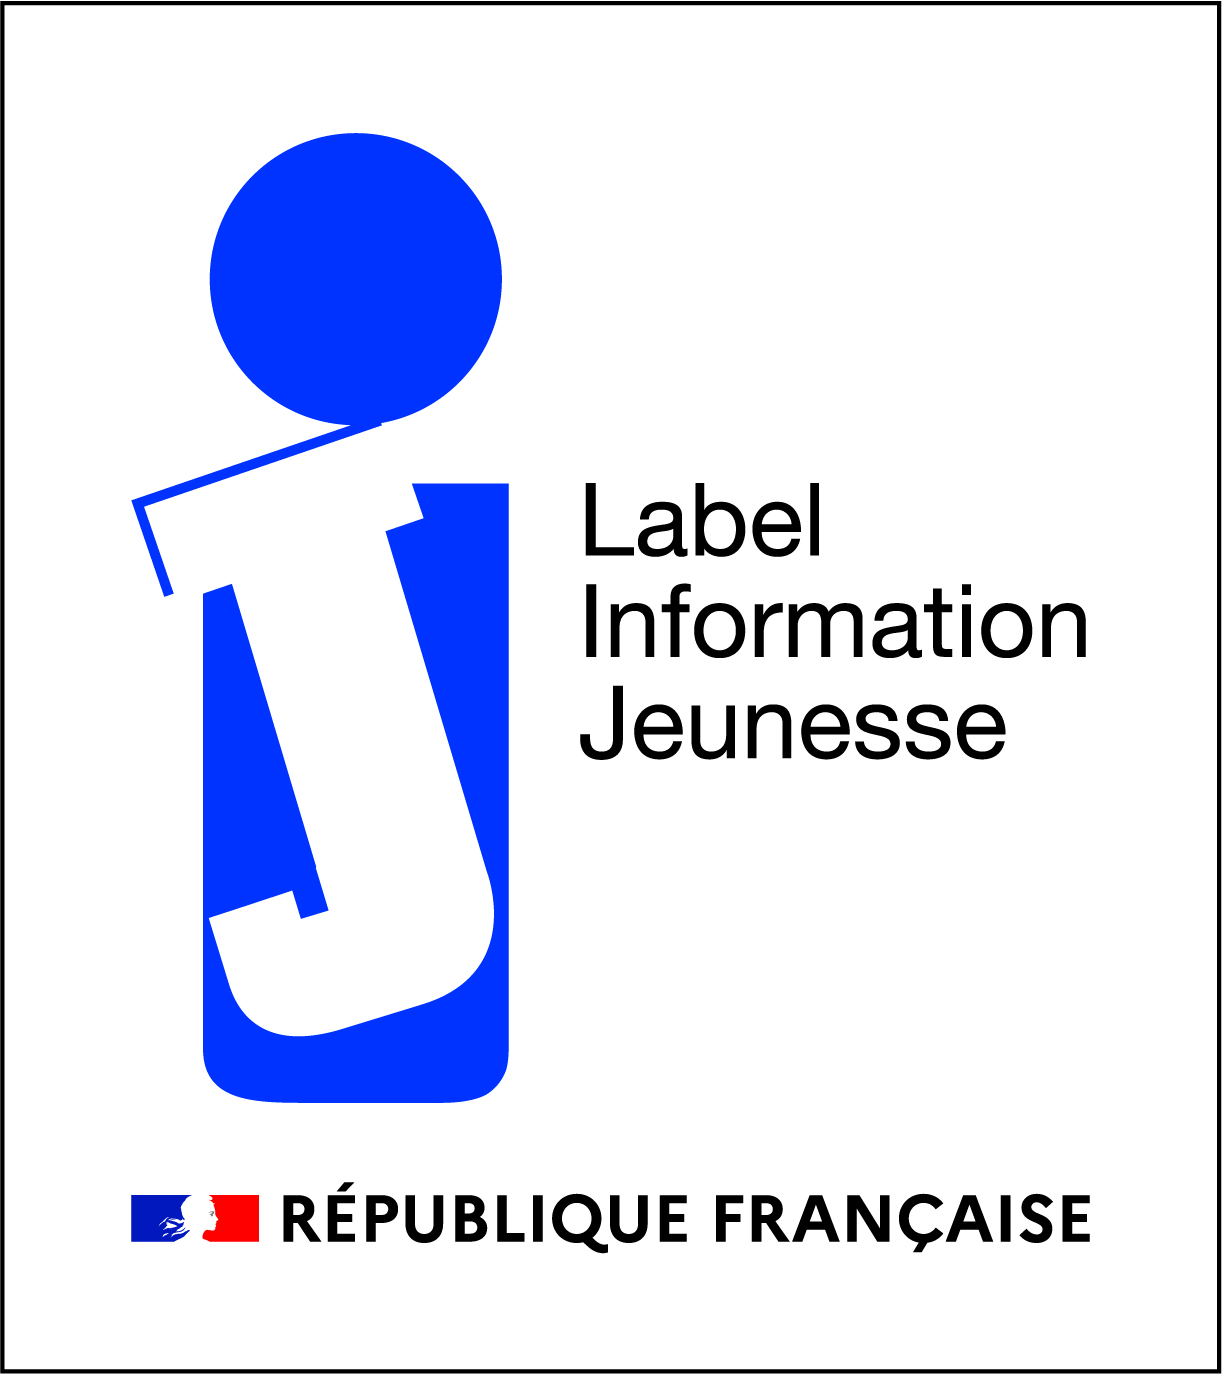 LABEL INFORMATION JEUNESSE REPUBLIQUE FRANCAISE